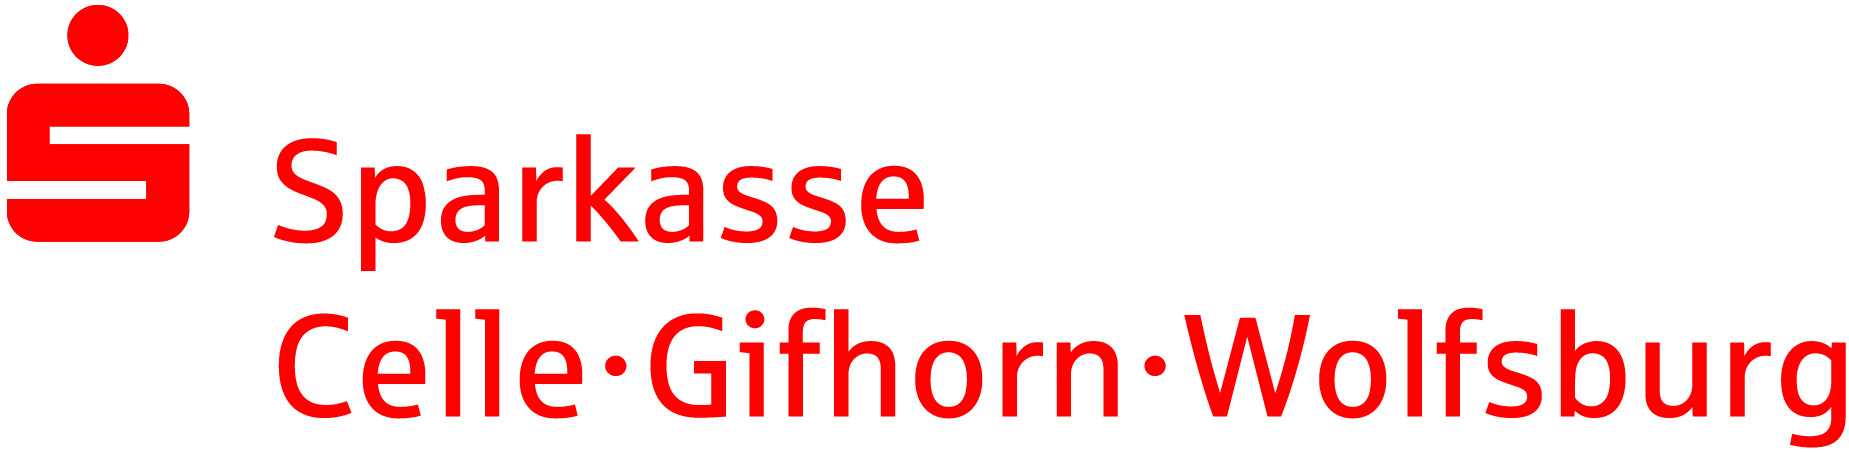 Sparkasse Gifhon-Celle-Wolfsburg